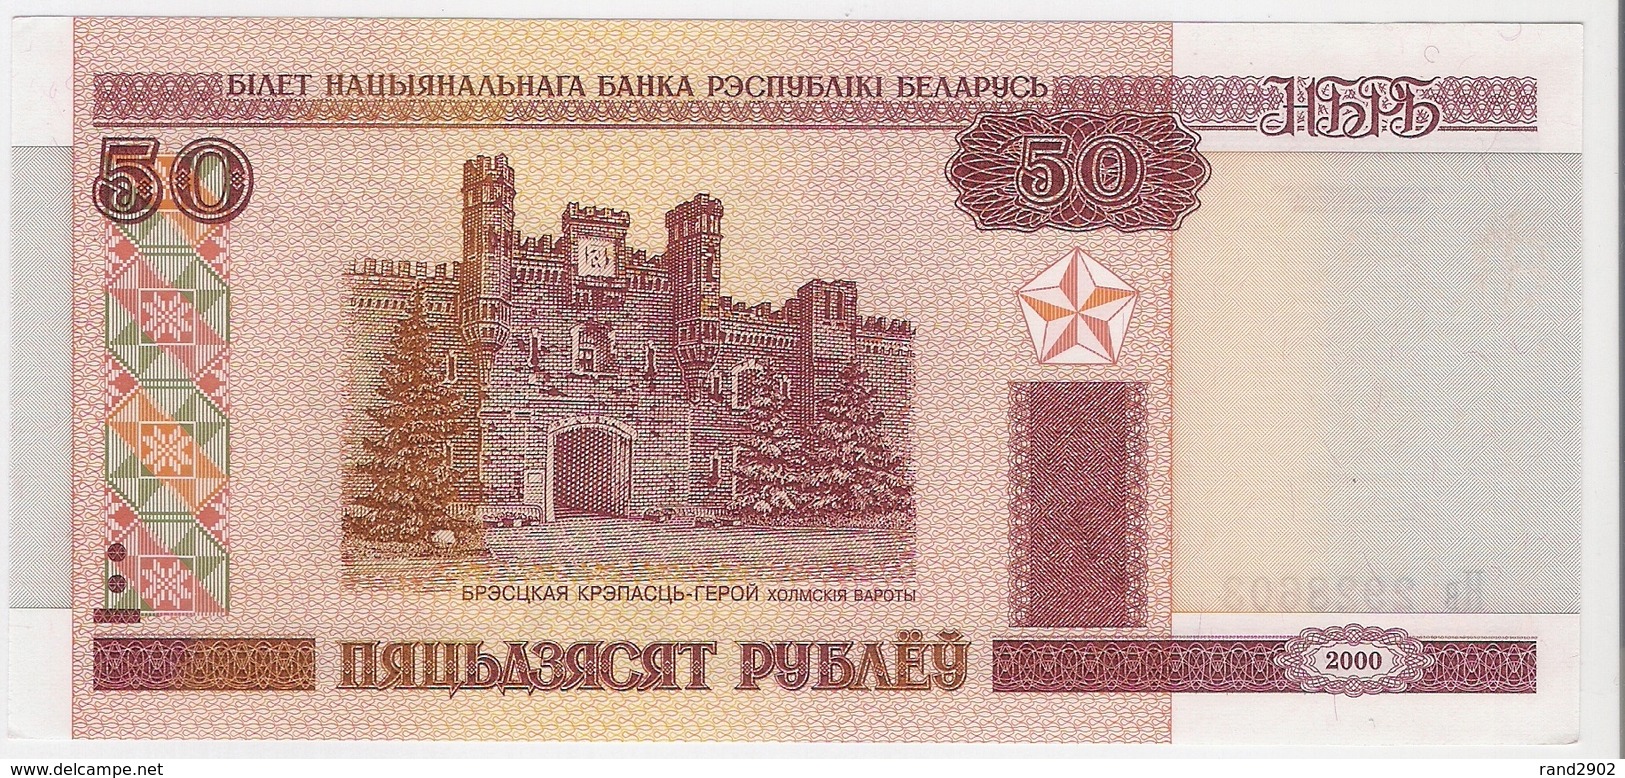 Belarus 50 Rublei 2000 (10) P-25 /025B/ - Belarus